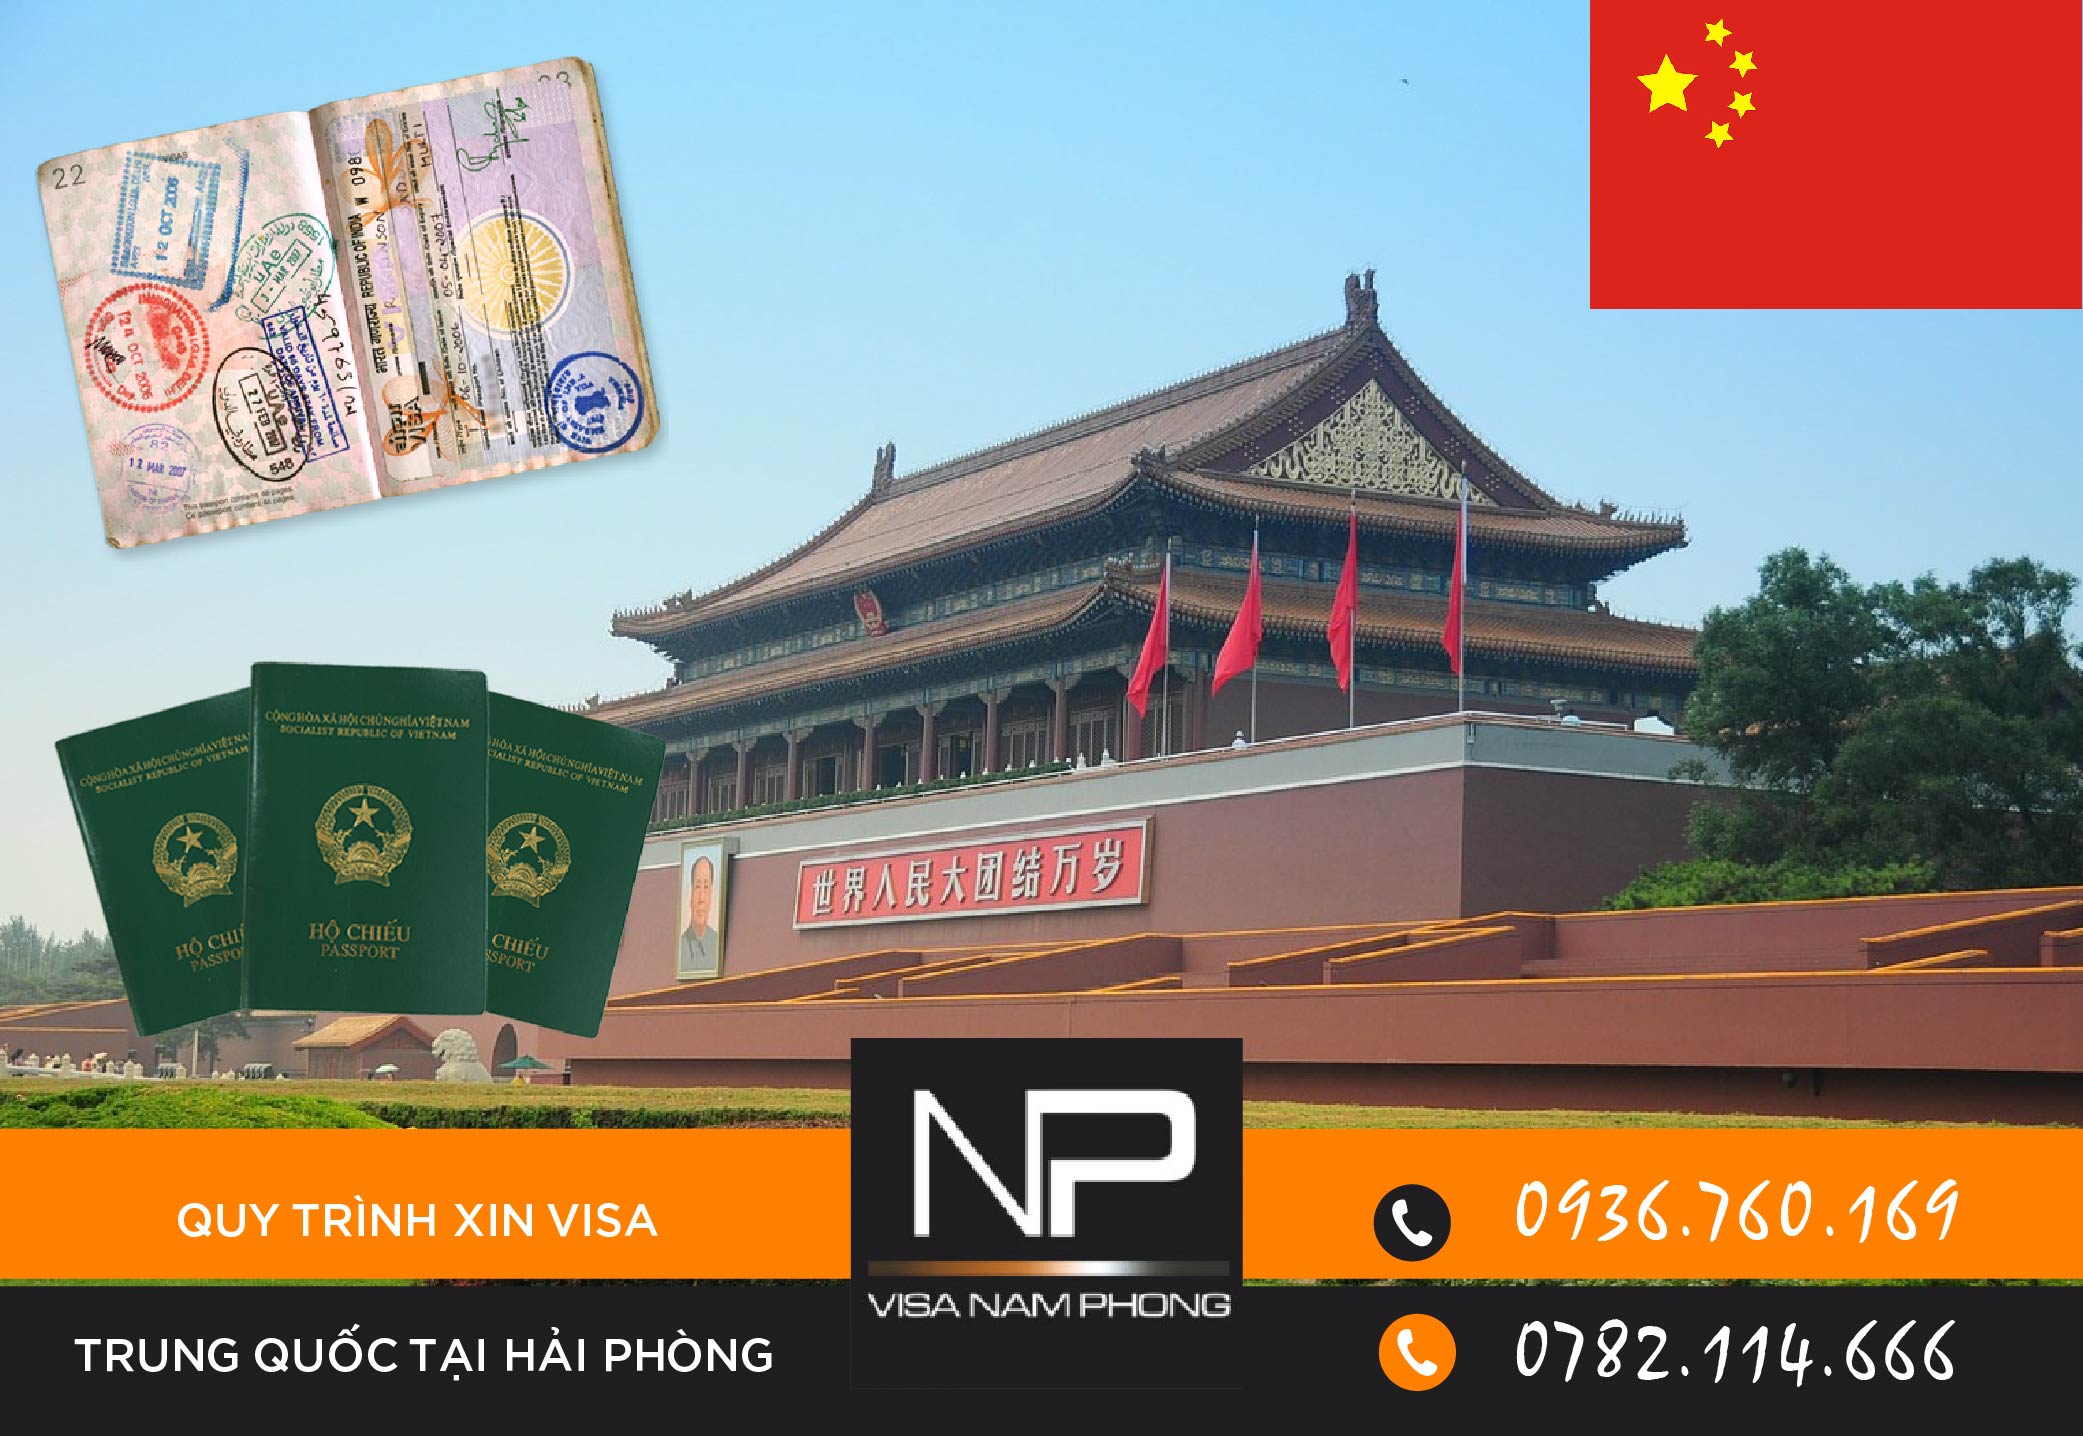 Quy trình xin visa Trung Quốc tại Hải Phòng